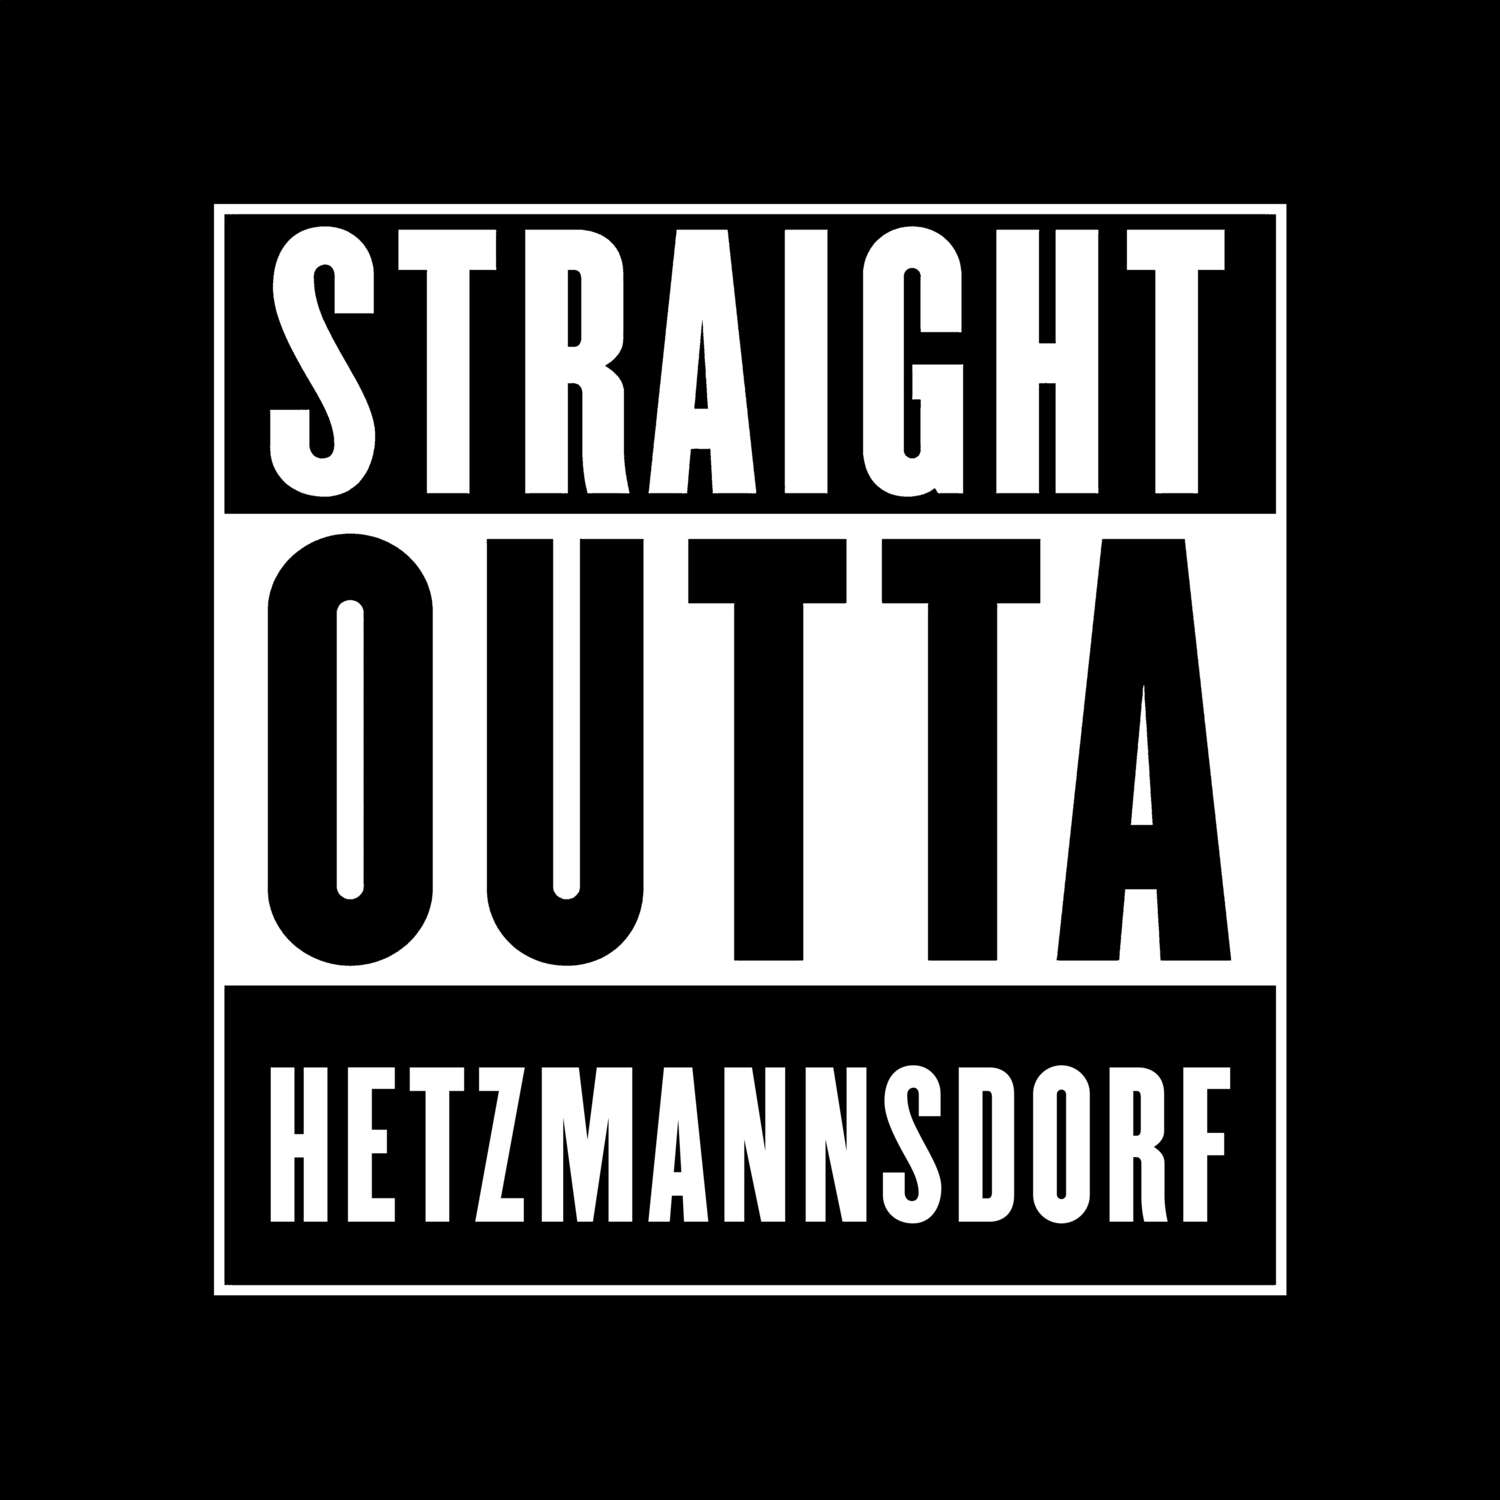 Hetzmannsdorf T-Shirt »Straight Outta«